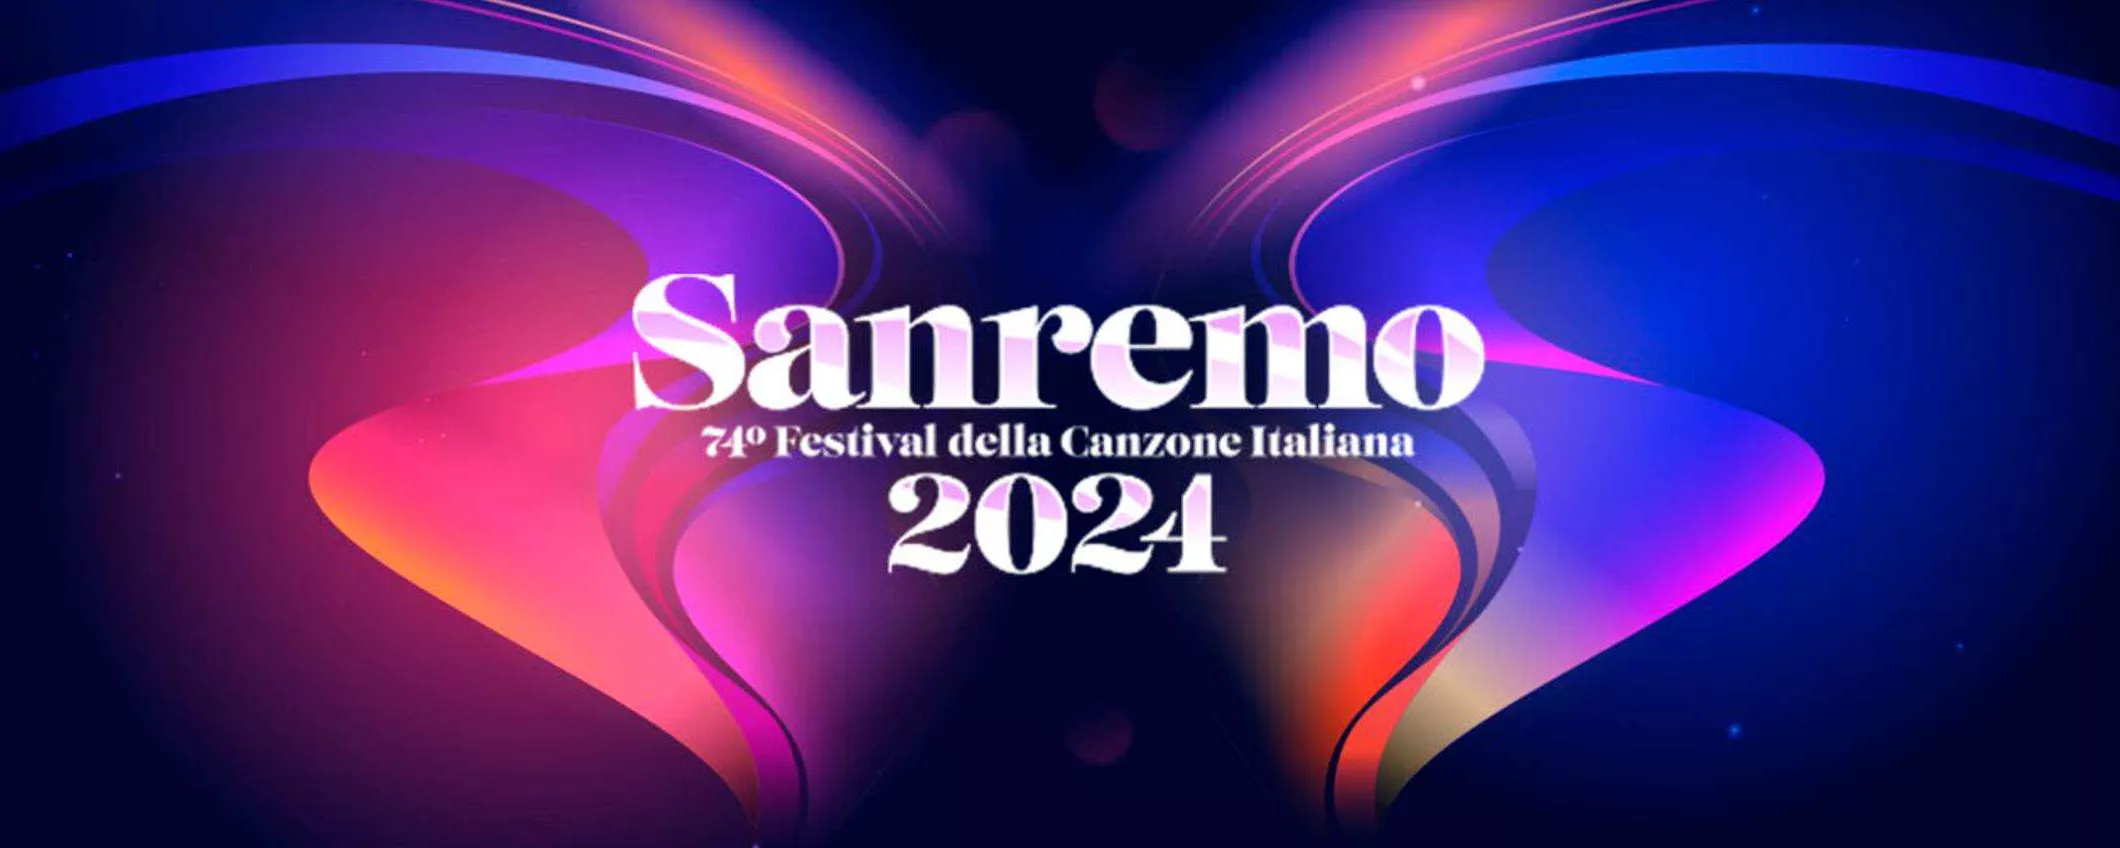 Sanremo 2024: pagelle e curiosità con Alexa ed Amazon Music